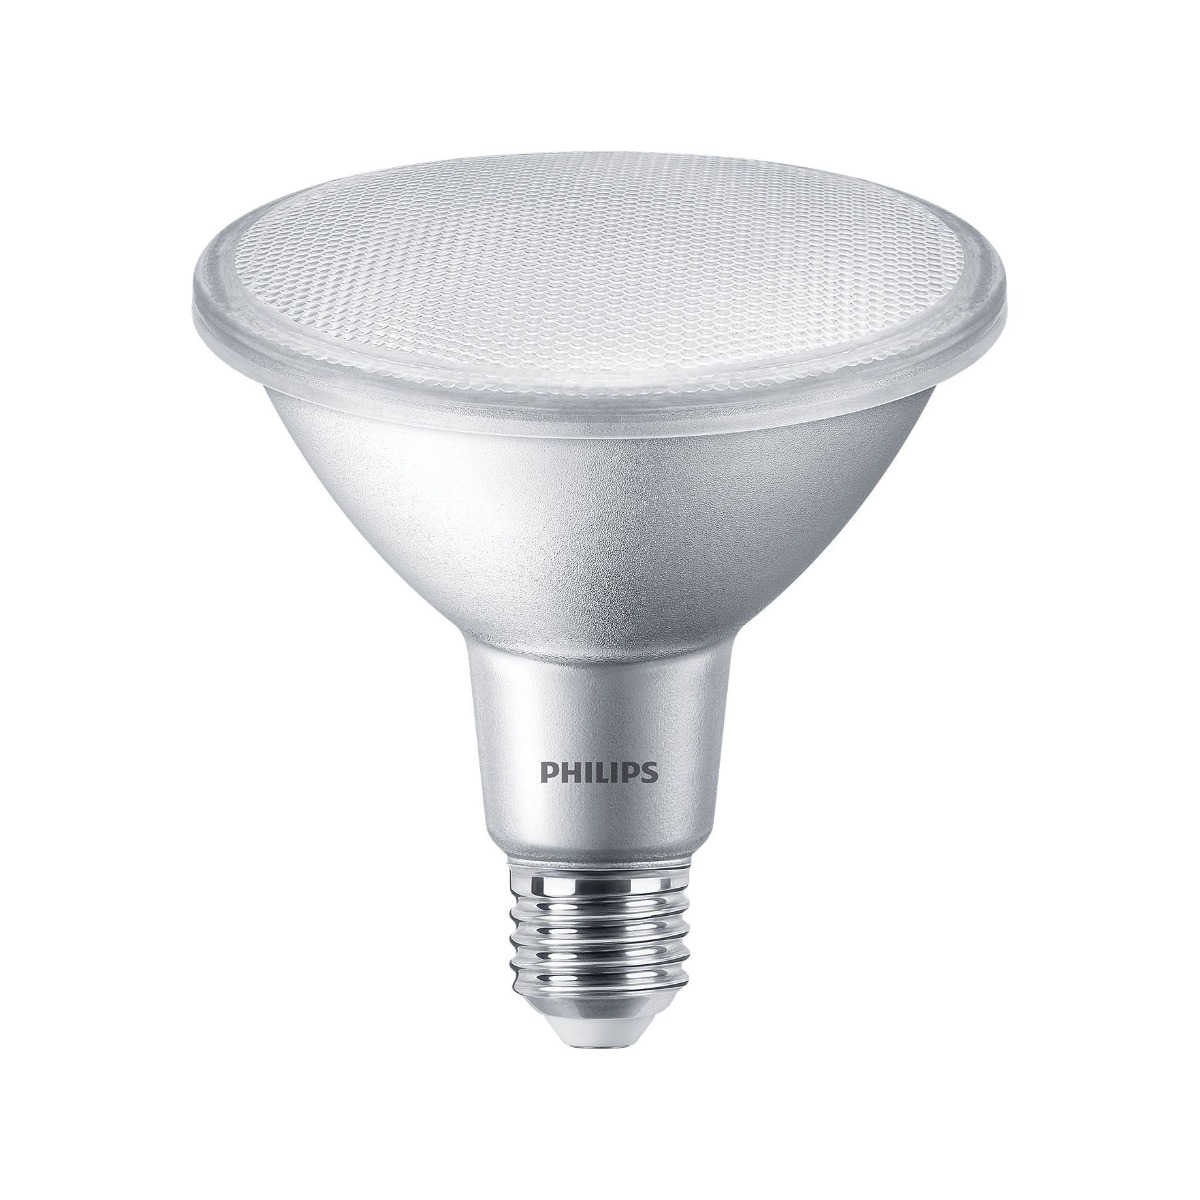 Philips LED Spot PAR38 13-100W E27 927 25° DIM 1000lm 2700K